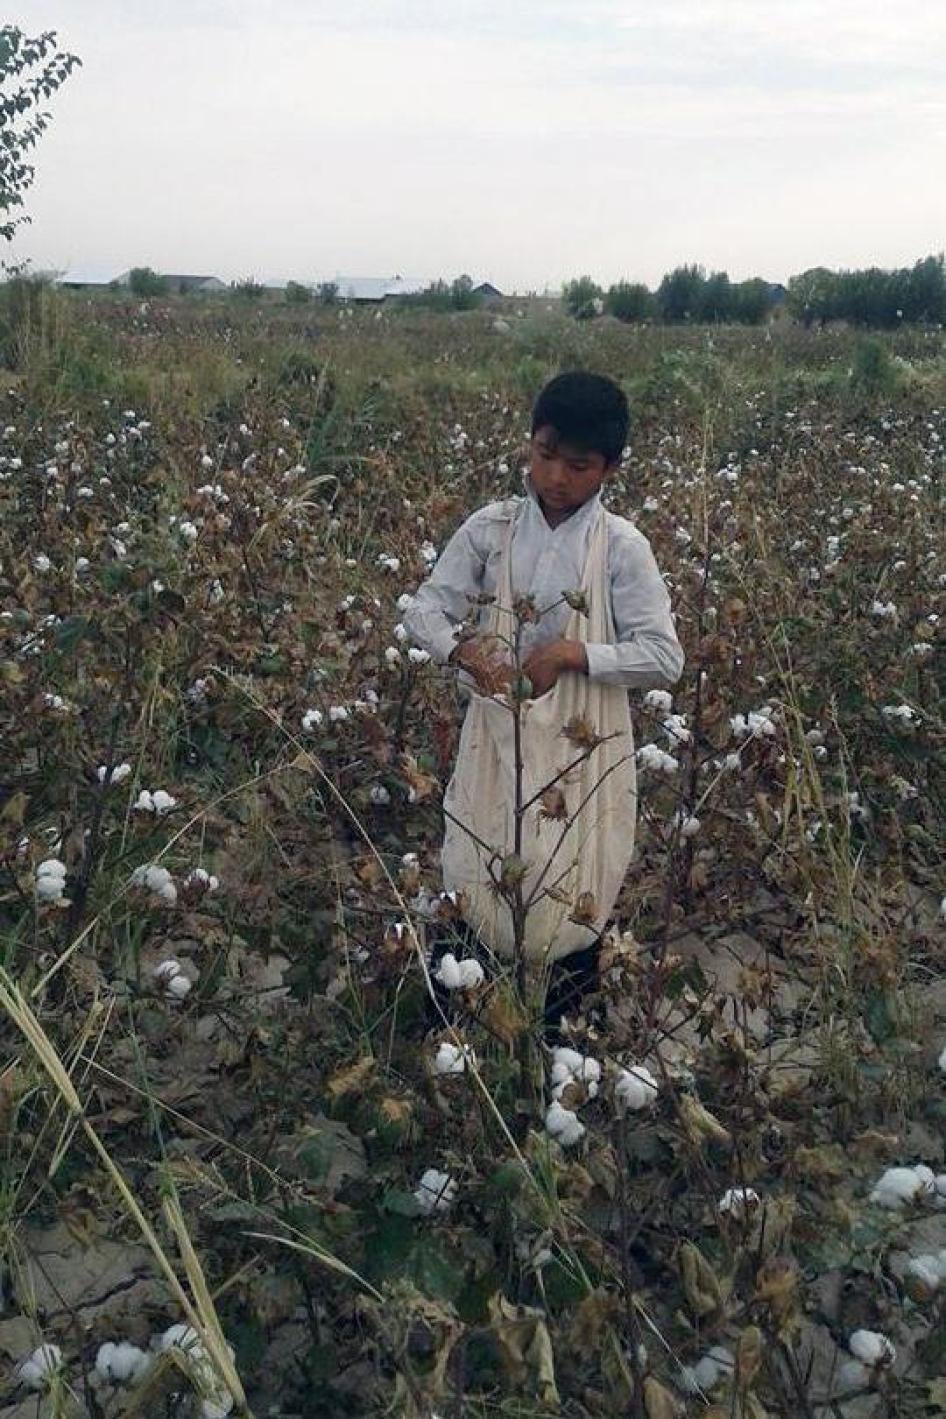 2016年收获季，在世界银行项目区域之一，卡拉卡尔帕克斯坦自治共和国艾利卡拉区，一名13岁男童被学校派来采摘棉花。在艾利卡拉，至少有两所学校下令13到14岁儿童在放学后下田采收棉花。